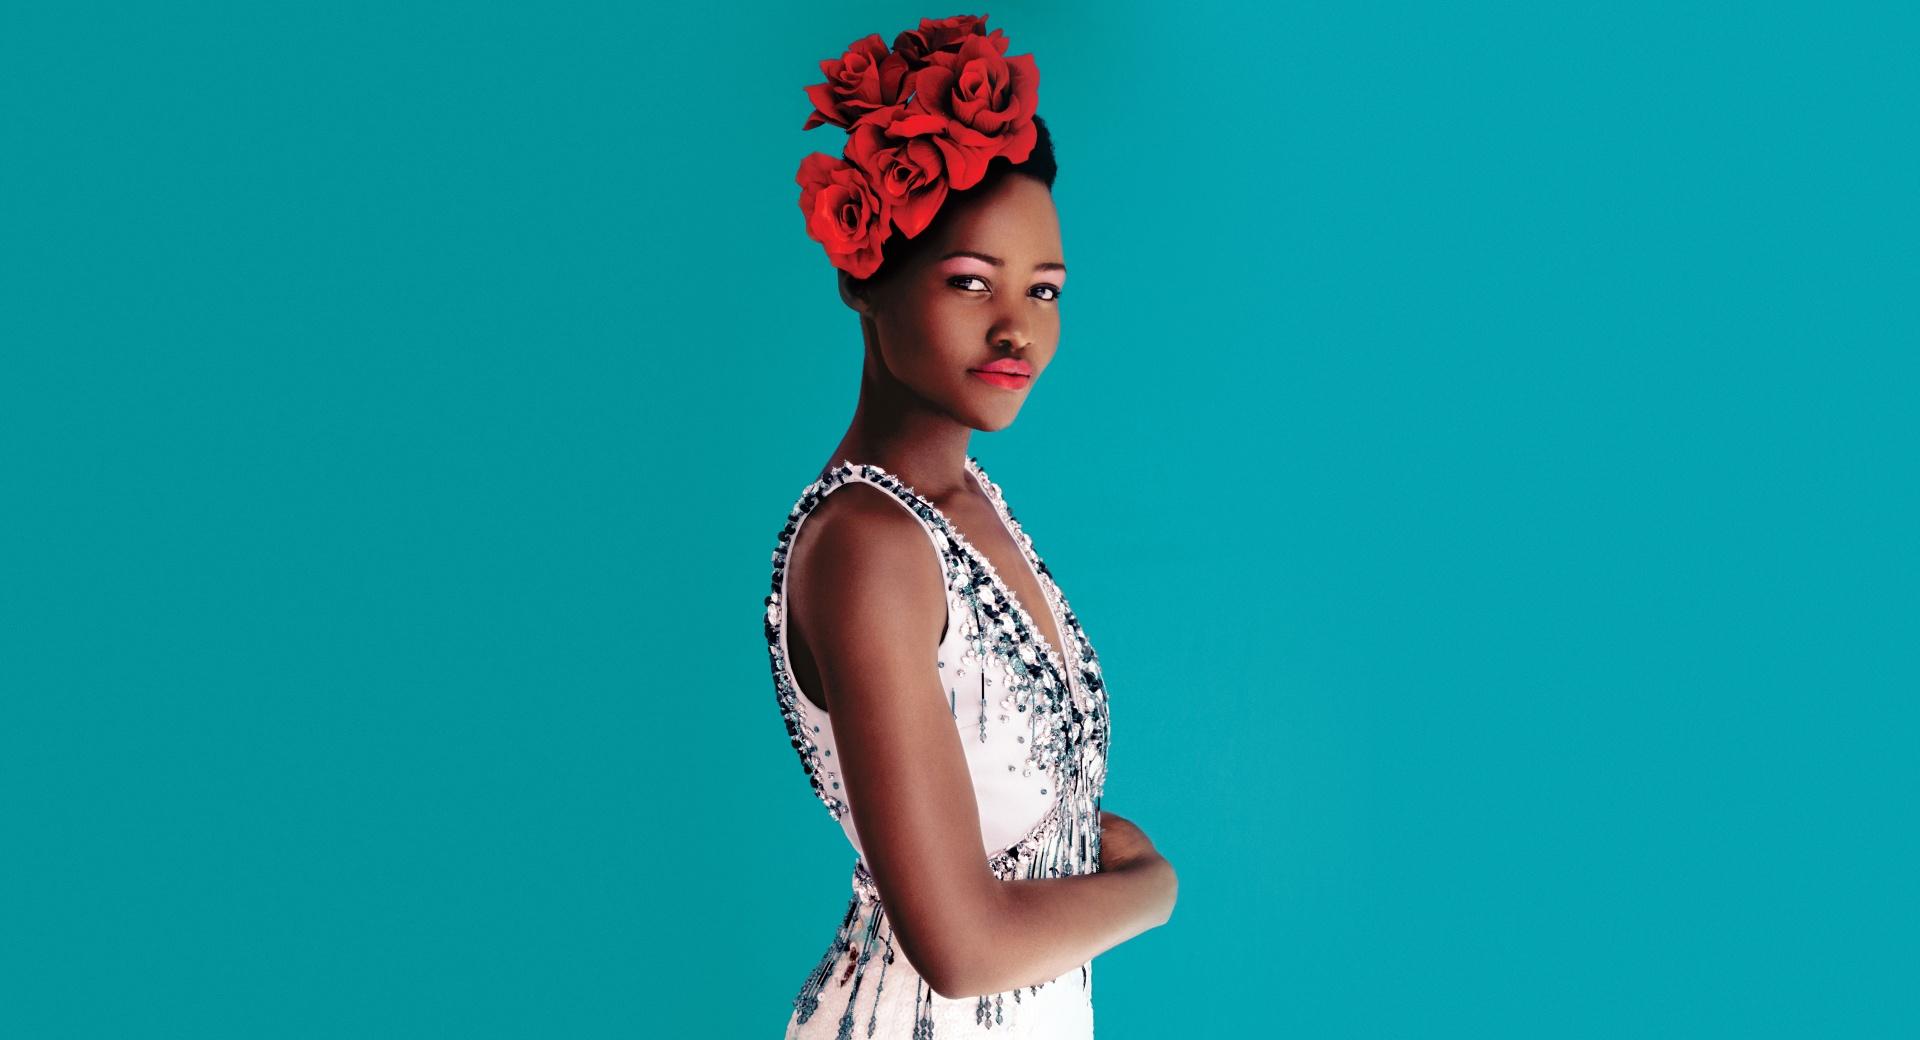 Lupita Nyongo Dress at 1280 x 960 size wallpapers HD quality